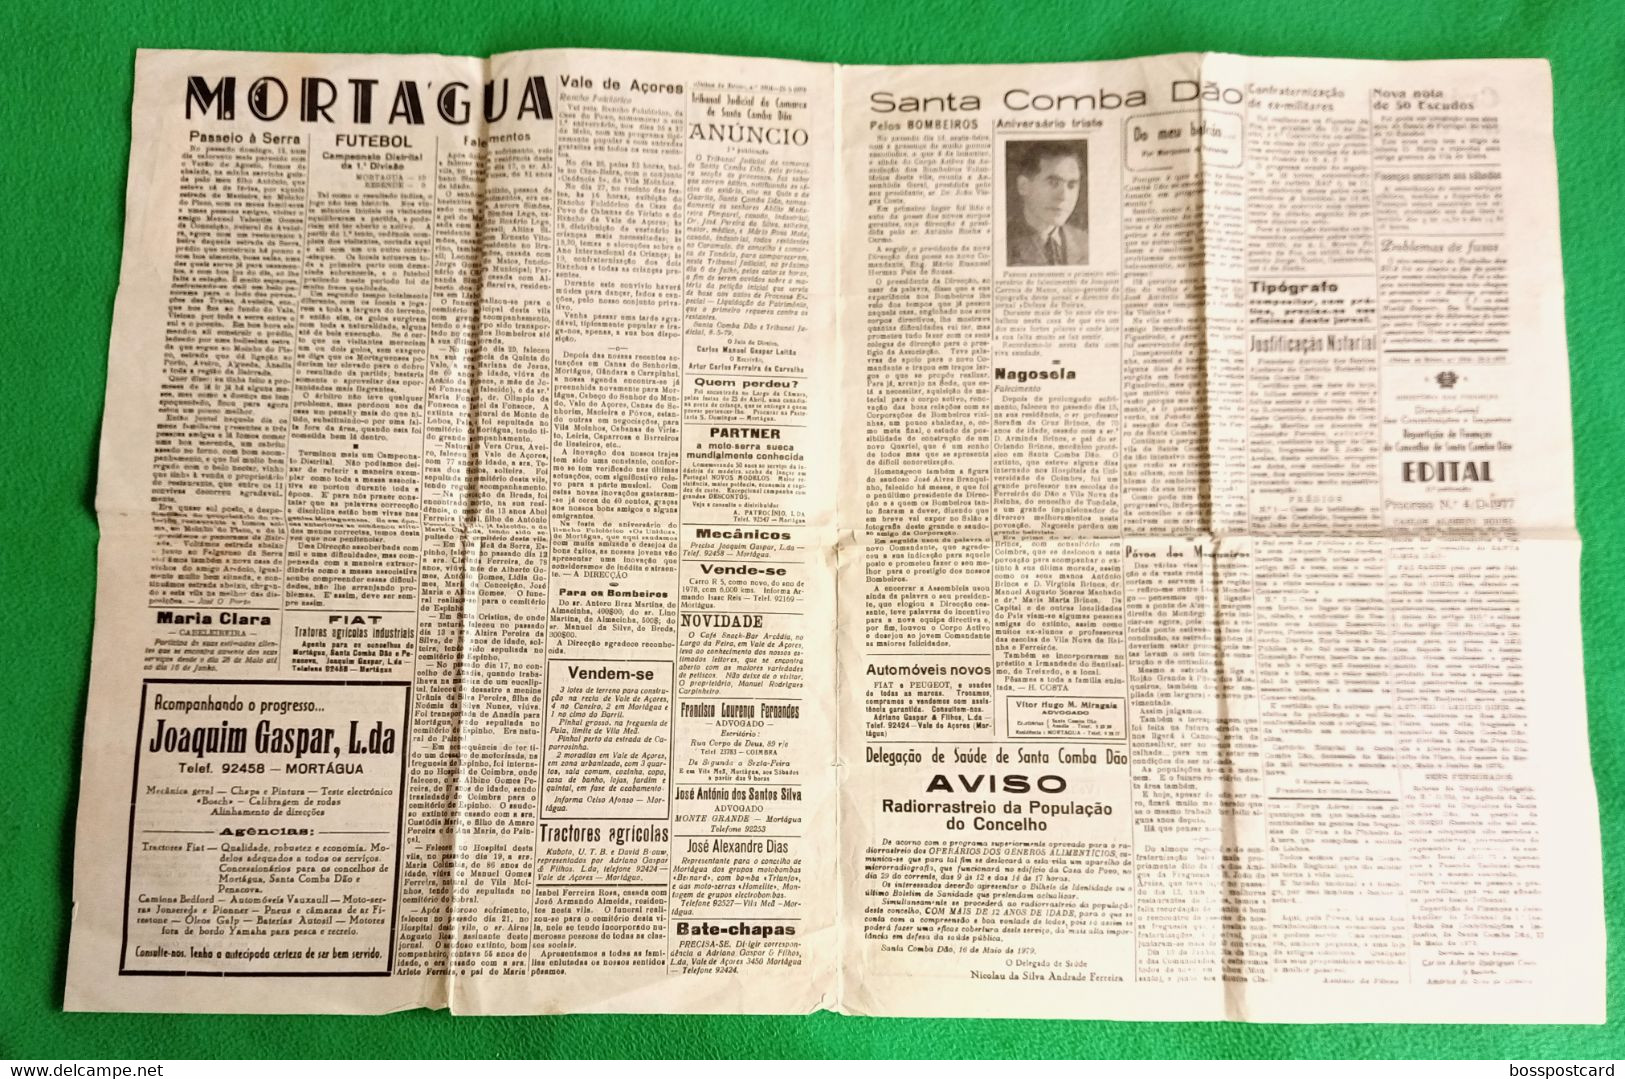 Santa Comba Dão - Jornal "Defesa Da Beira" Nº 1916, 25 De Maio De 1979 - Imprensa. Tábua. Mortágua. Viseu. Portugal. - Informaciones Generales